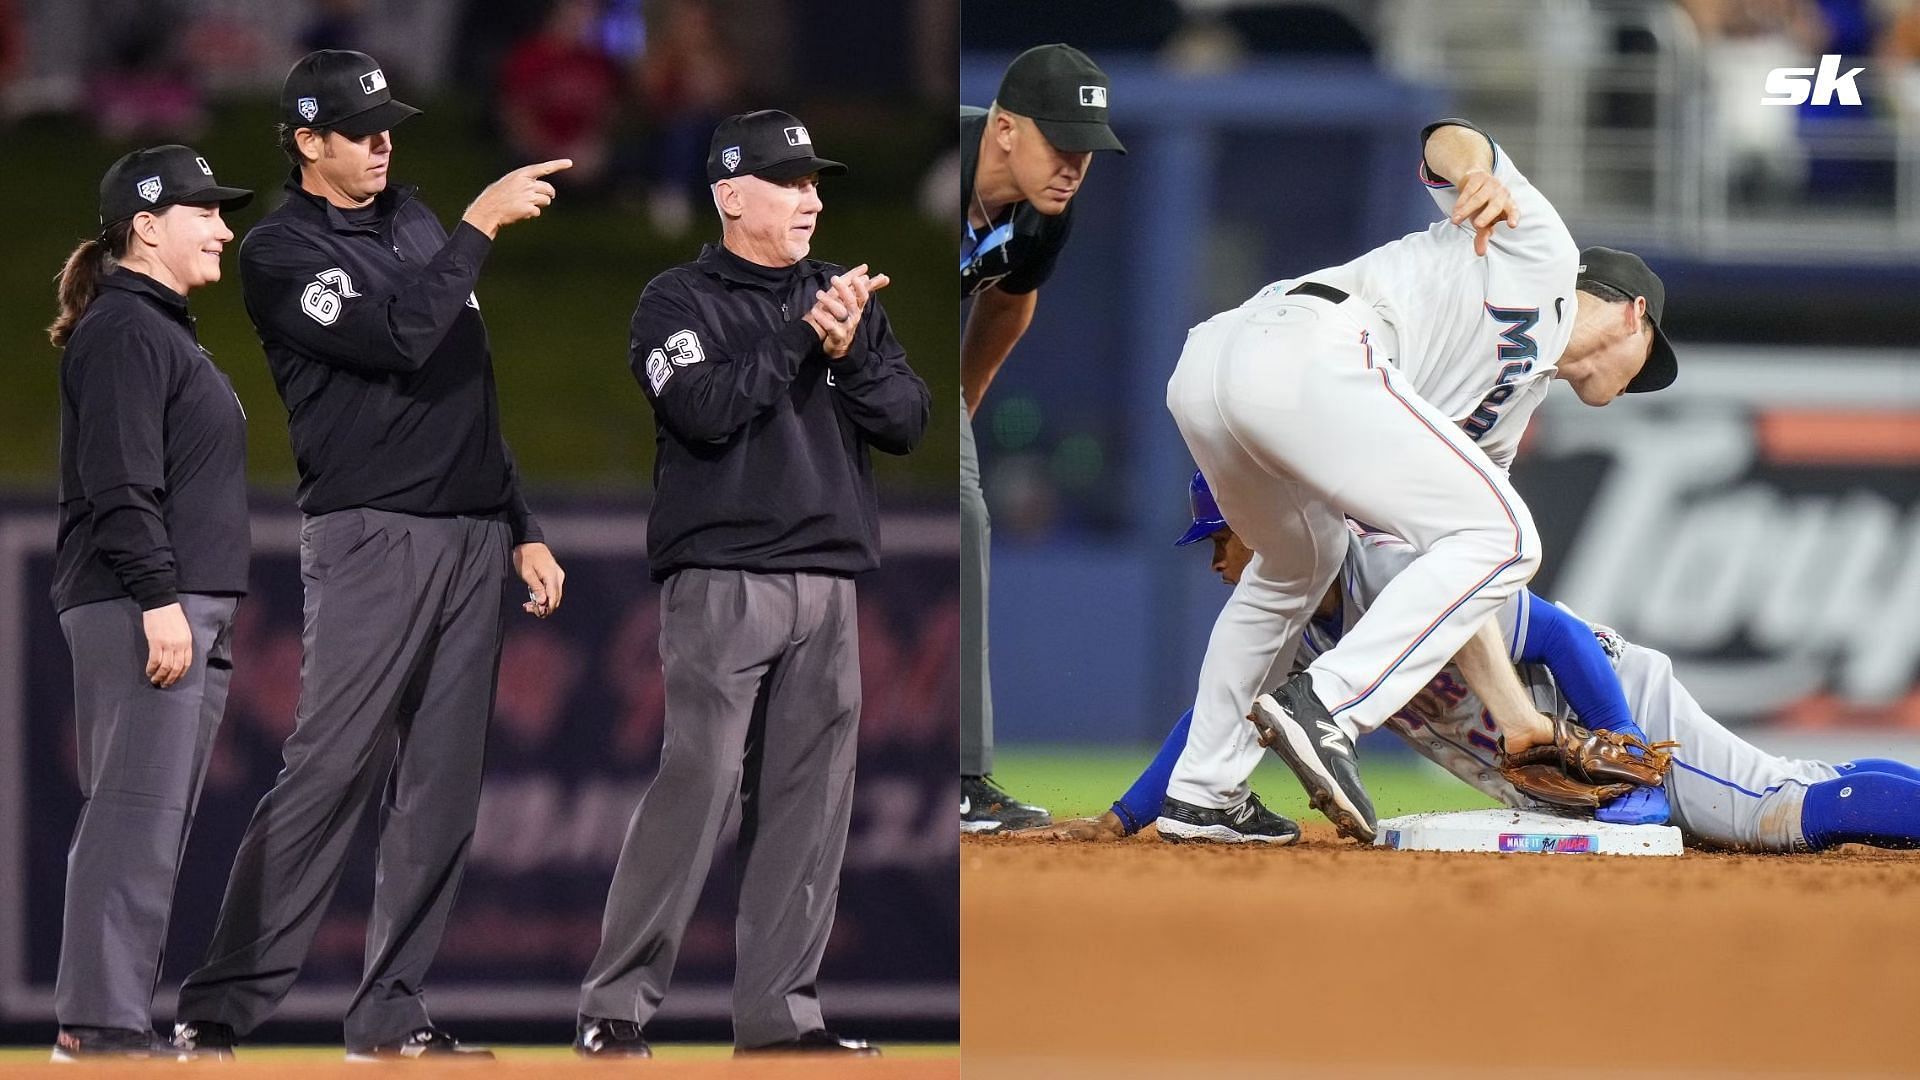 MLB Umpires Spring Training - Marlins vs Mets